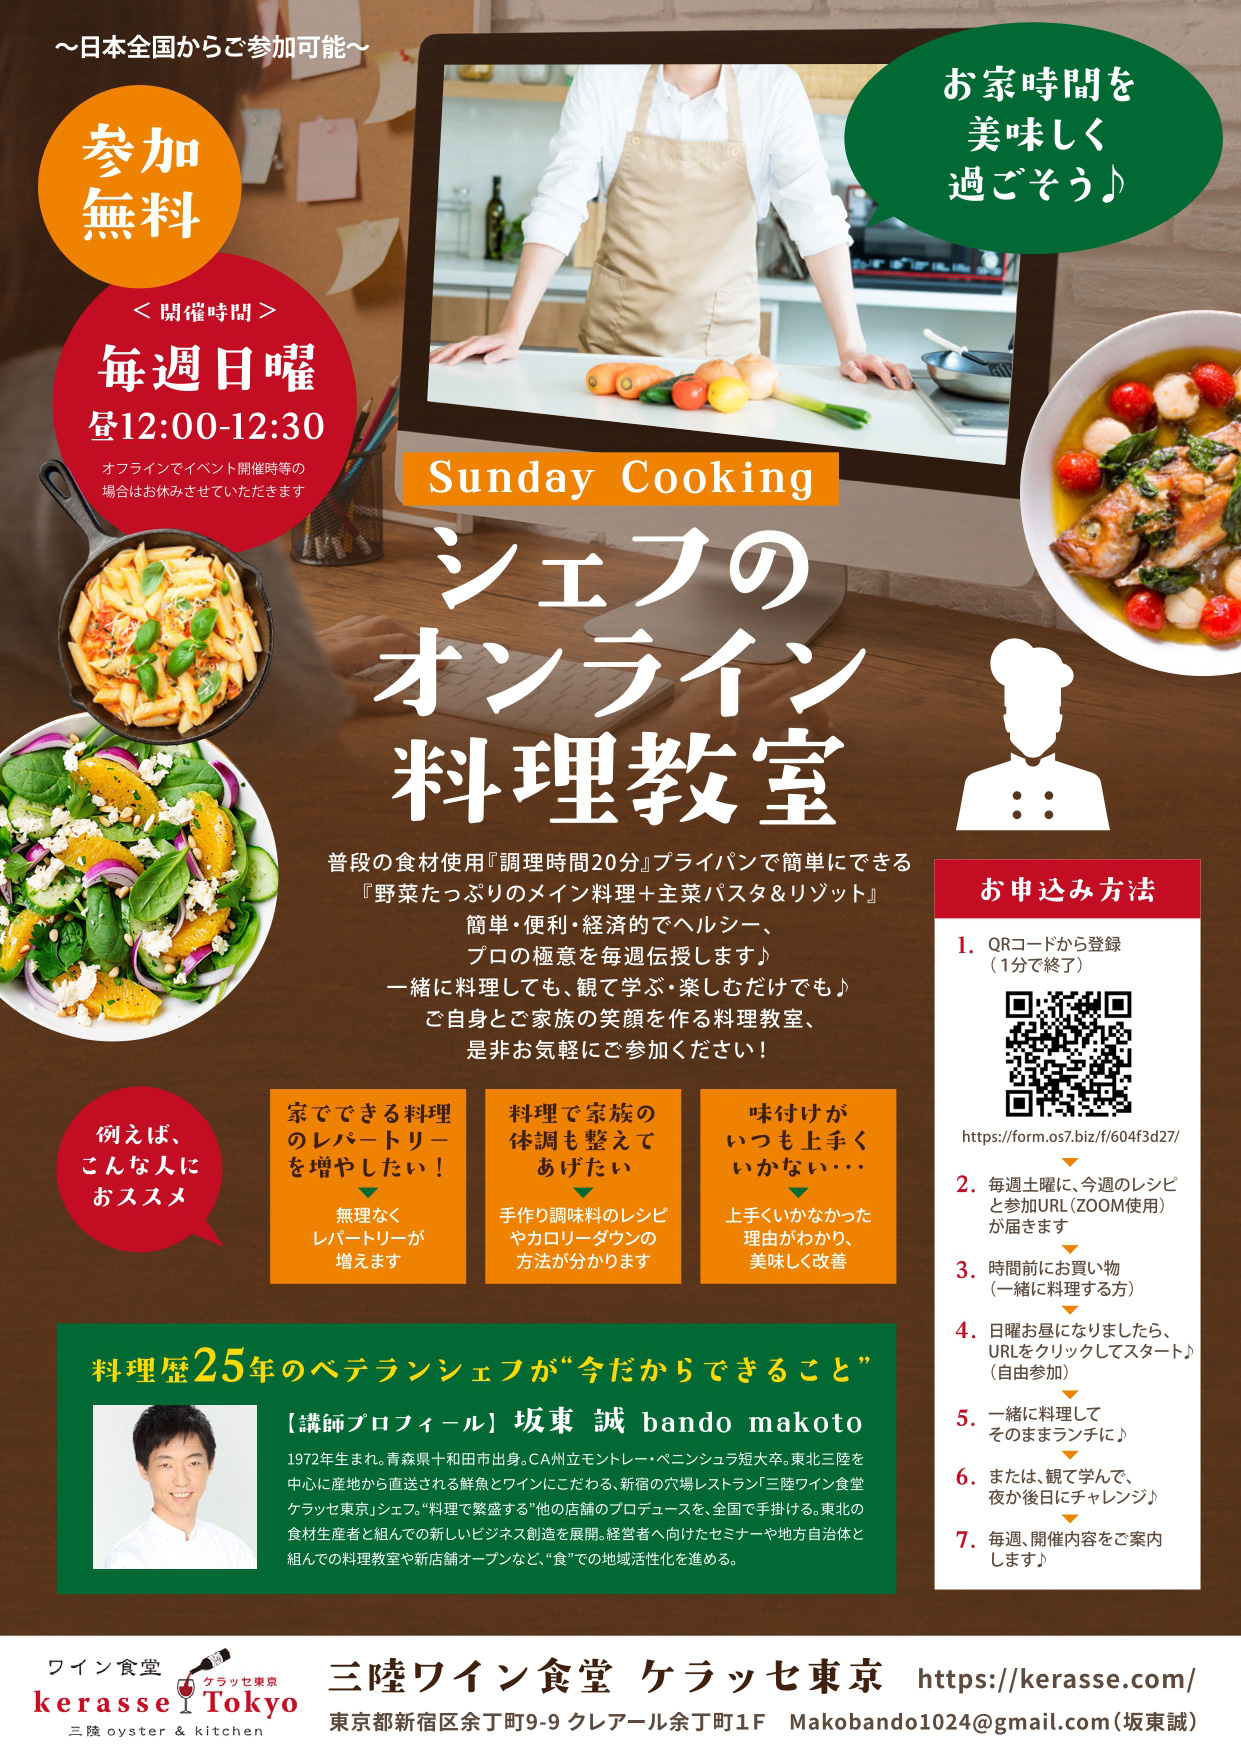 毎週日曜開催 オンライン料理教室 ワイン食堂 Kerasse Tokyo ケラッセ東京